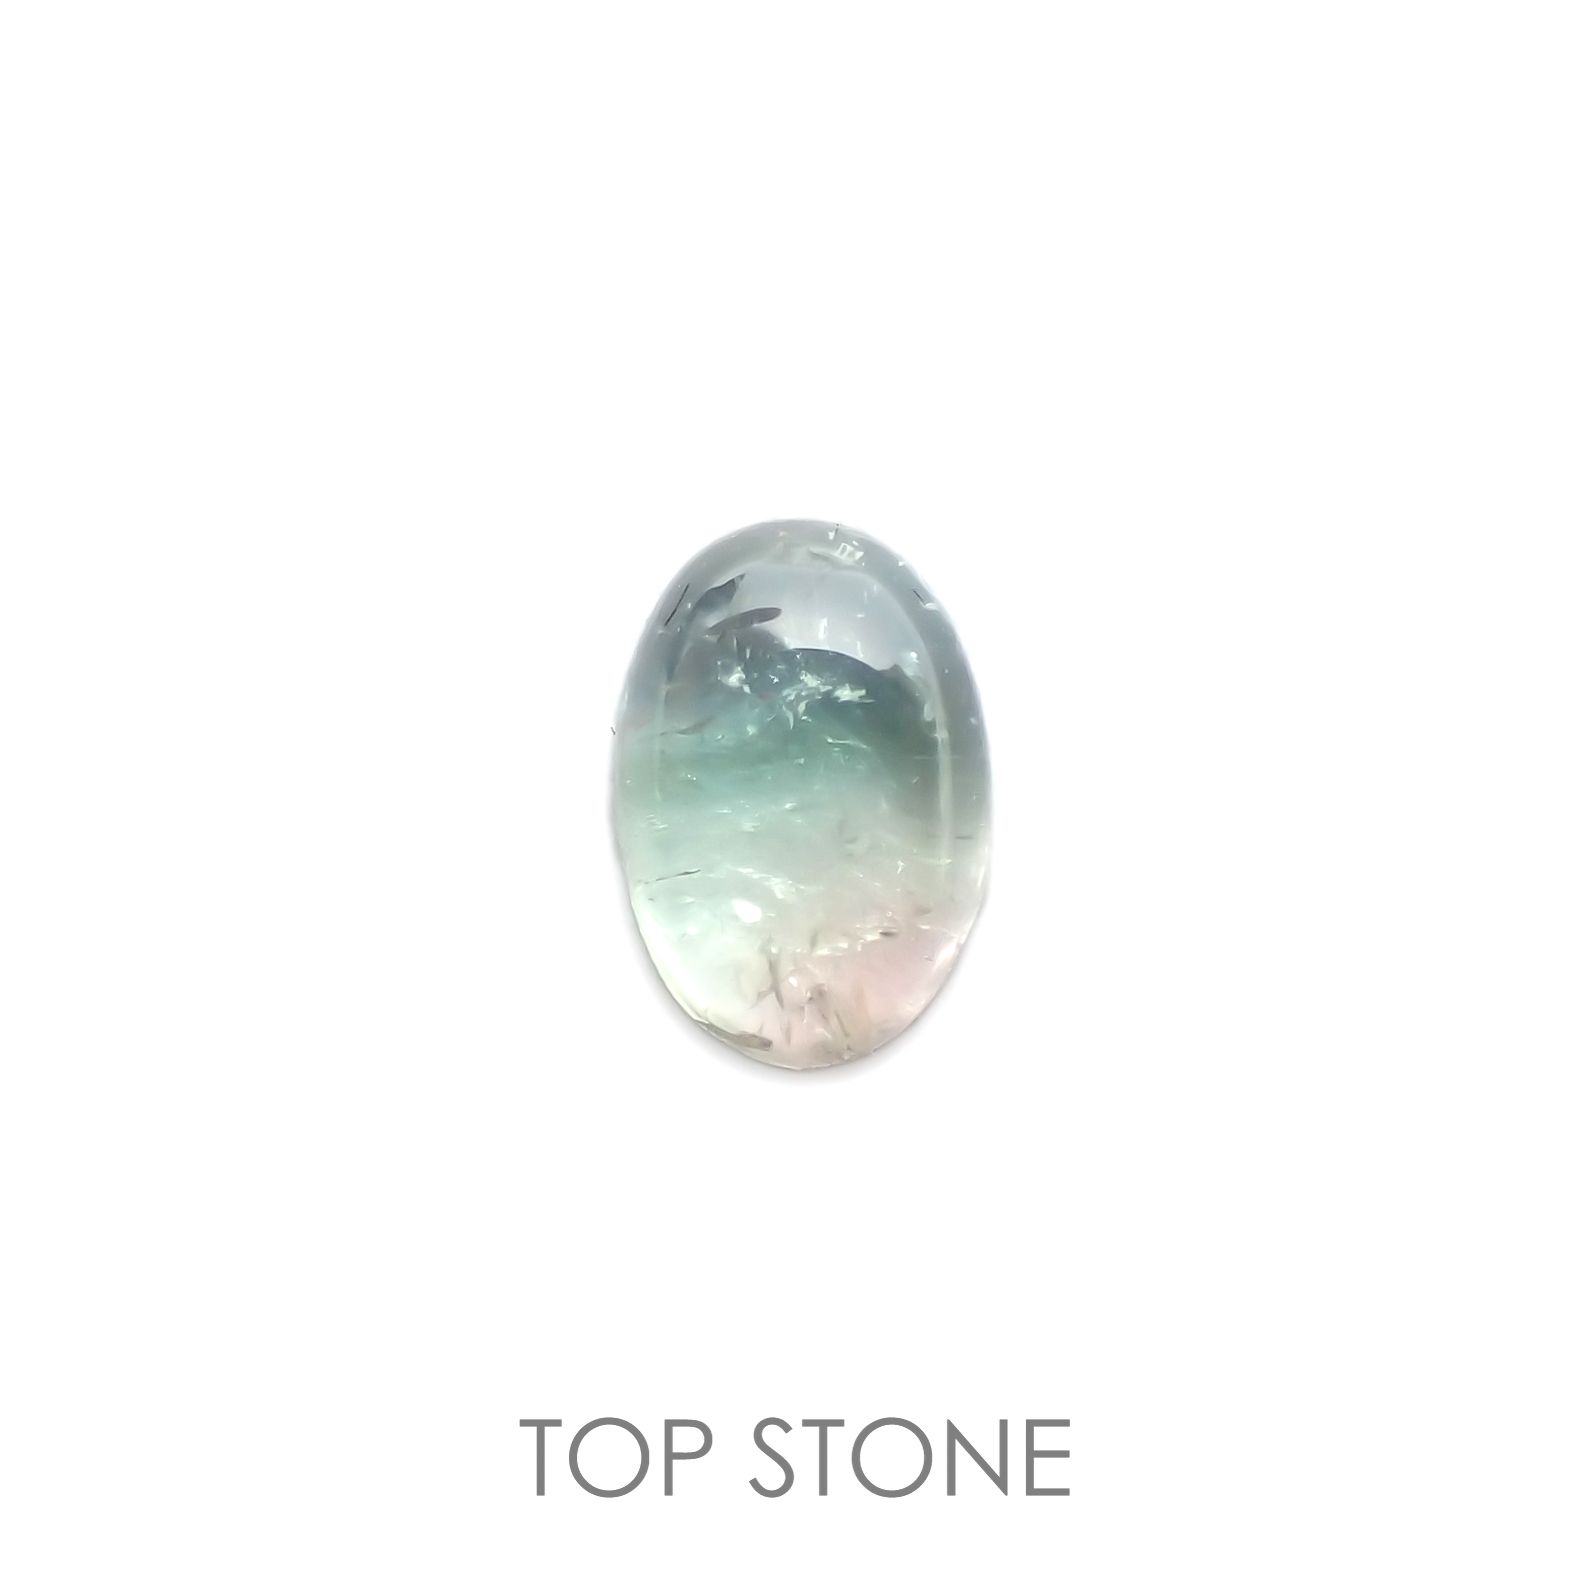 宝石名から探す / トルマリン 通販 | TOP STONE(トップストーン)